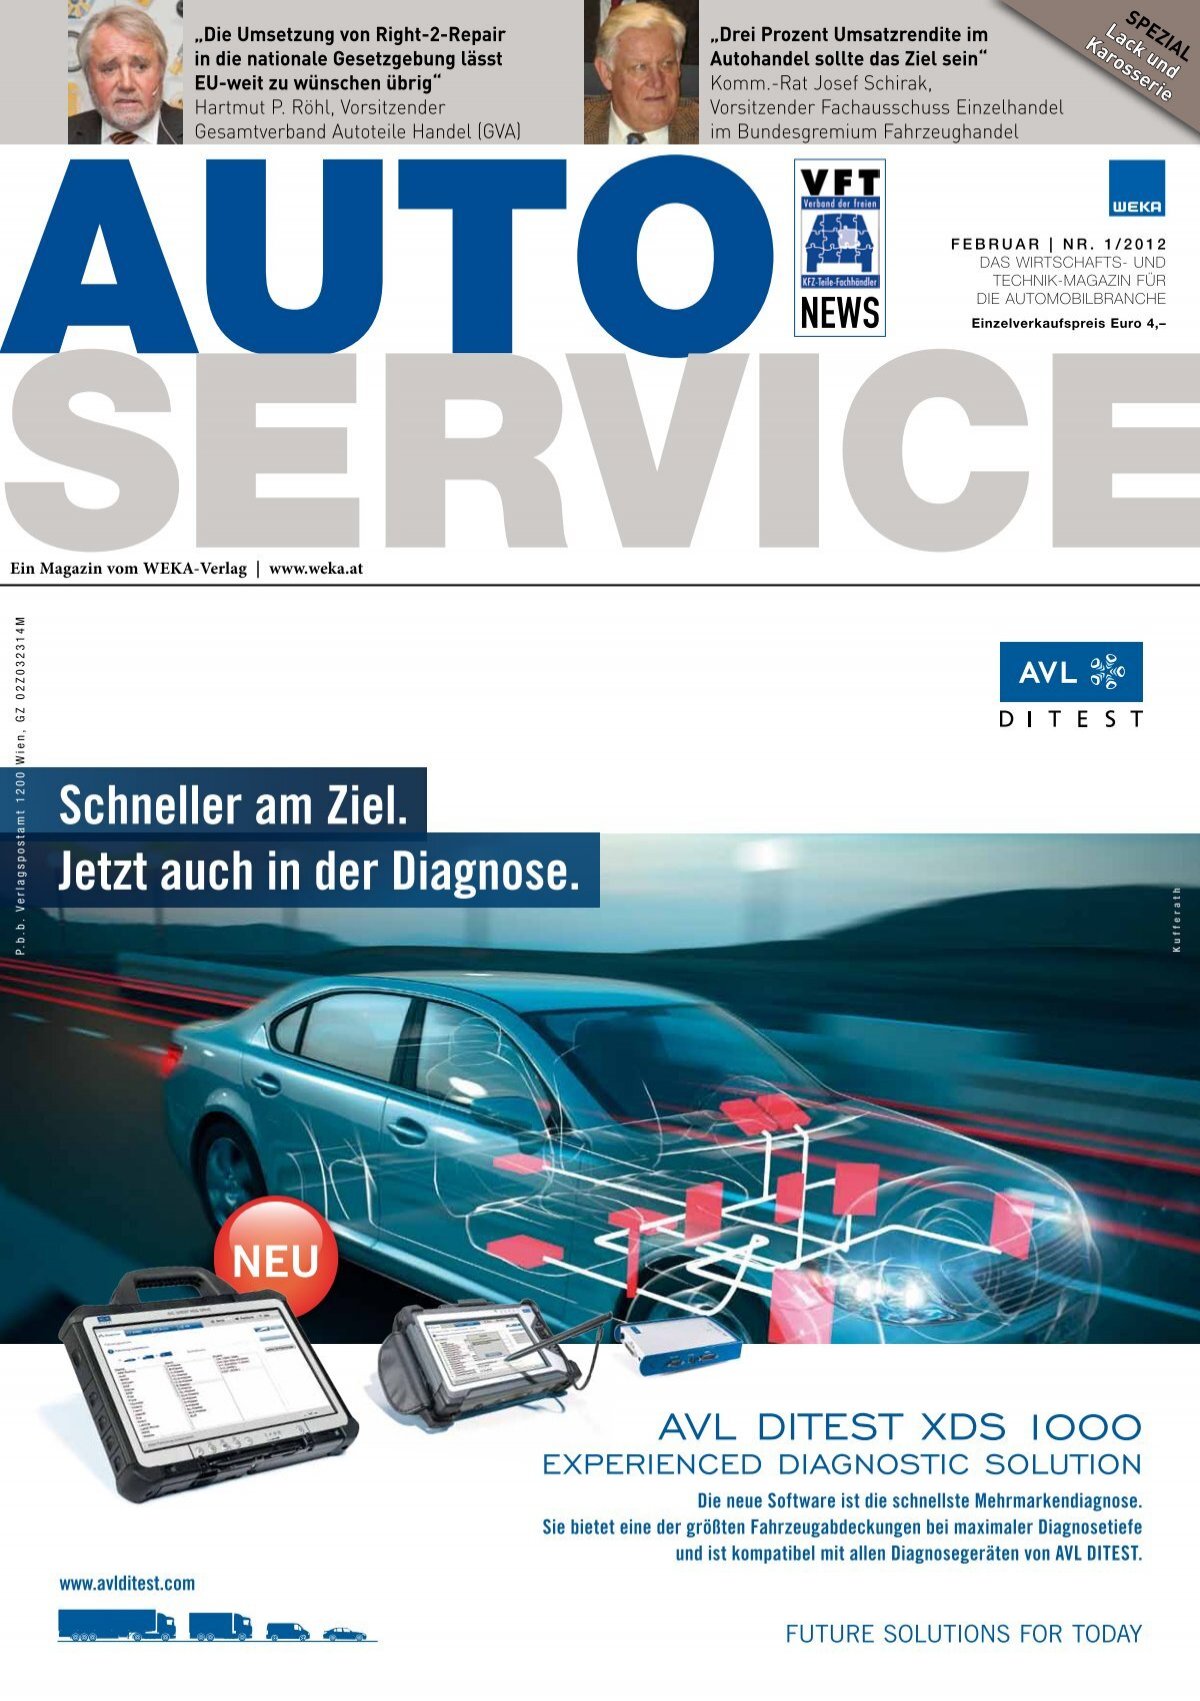 Befestigung für Unterfahrschutz - Technik - Audi A2 Club Deutschland